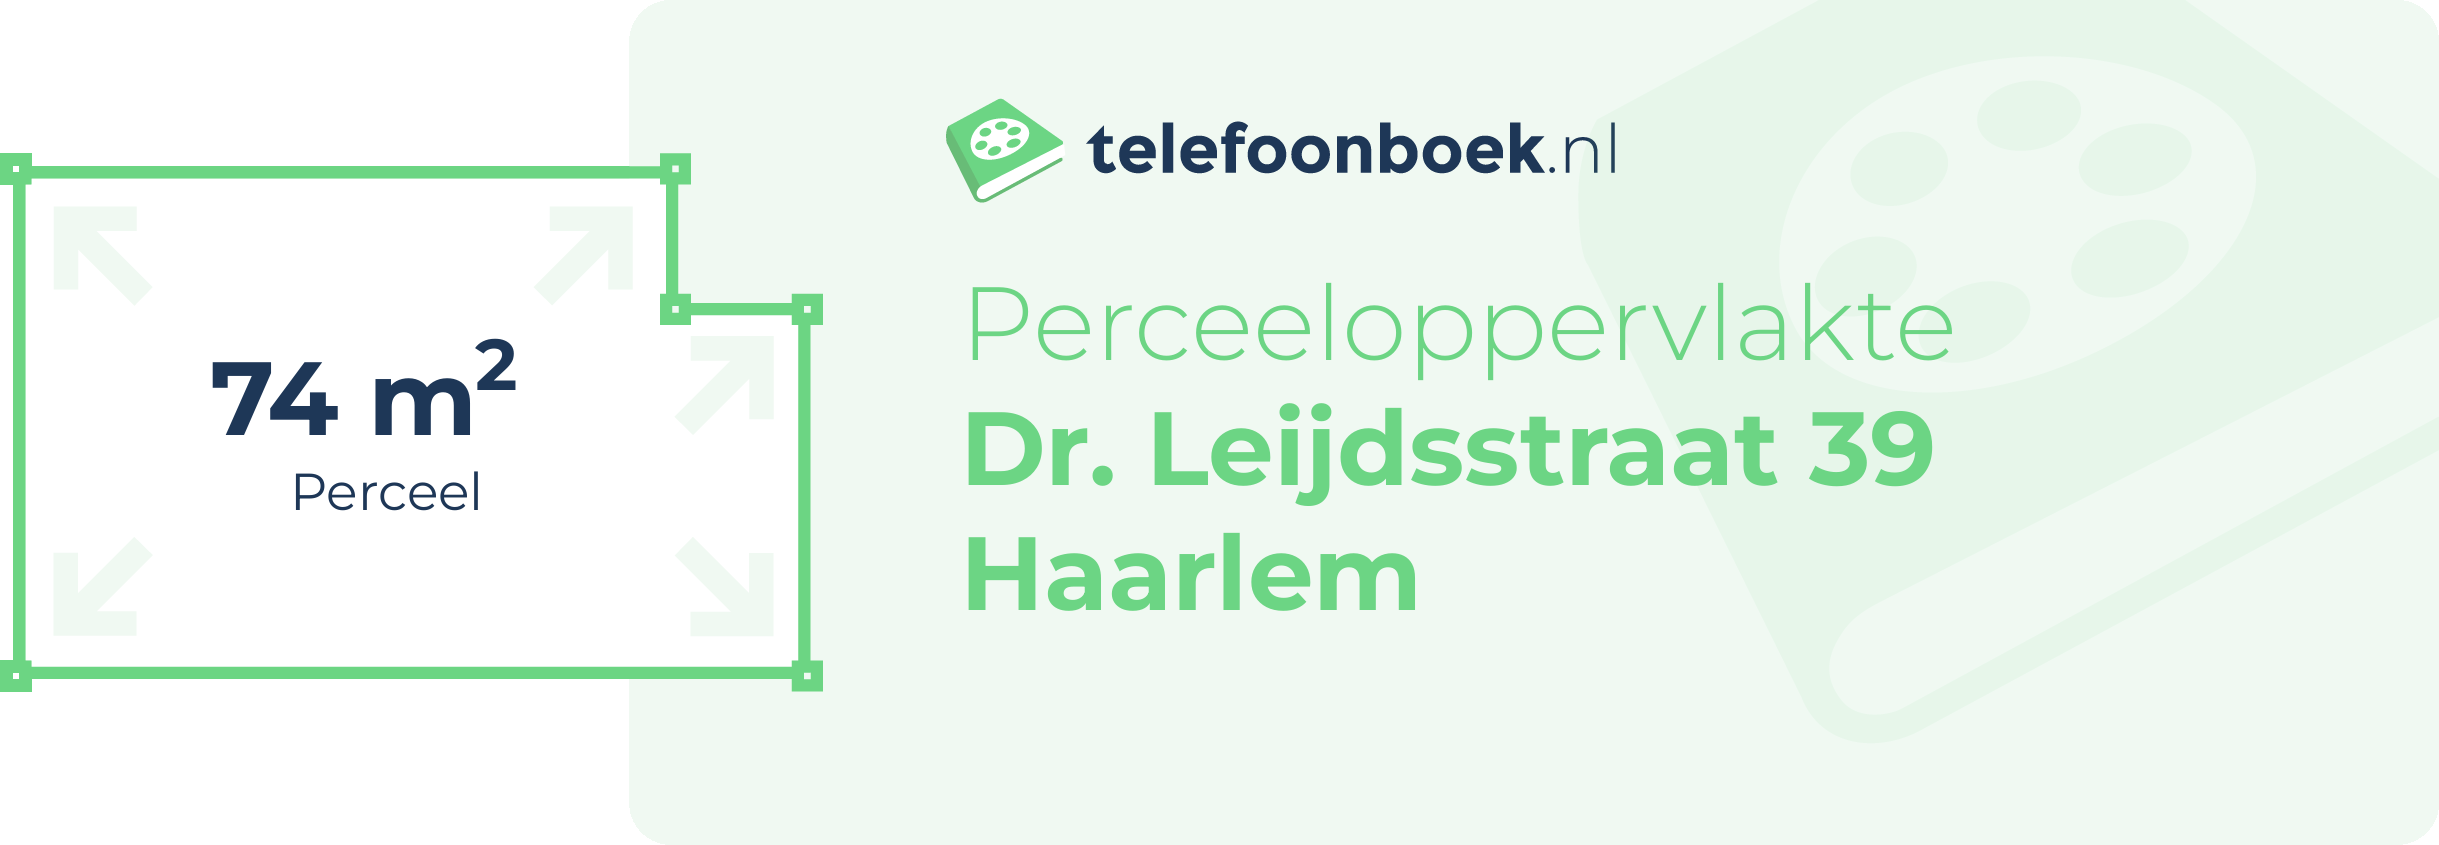 Perceeloppervlakte Dr. Leijdsstraat 39 Haarlem